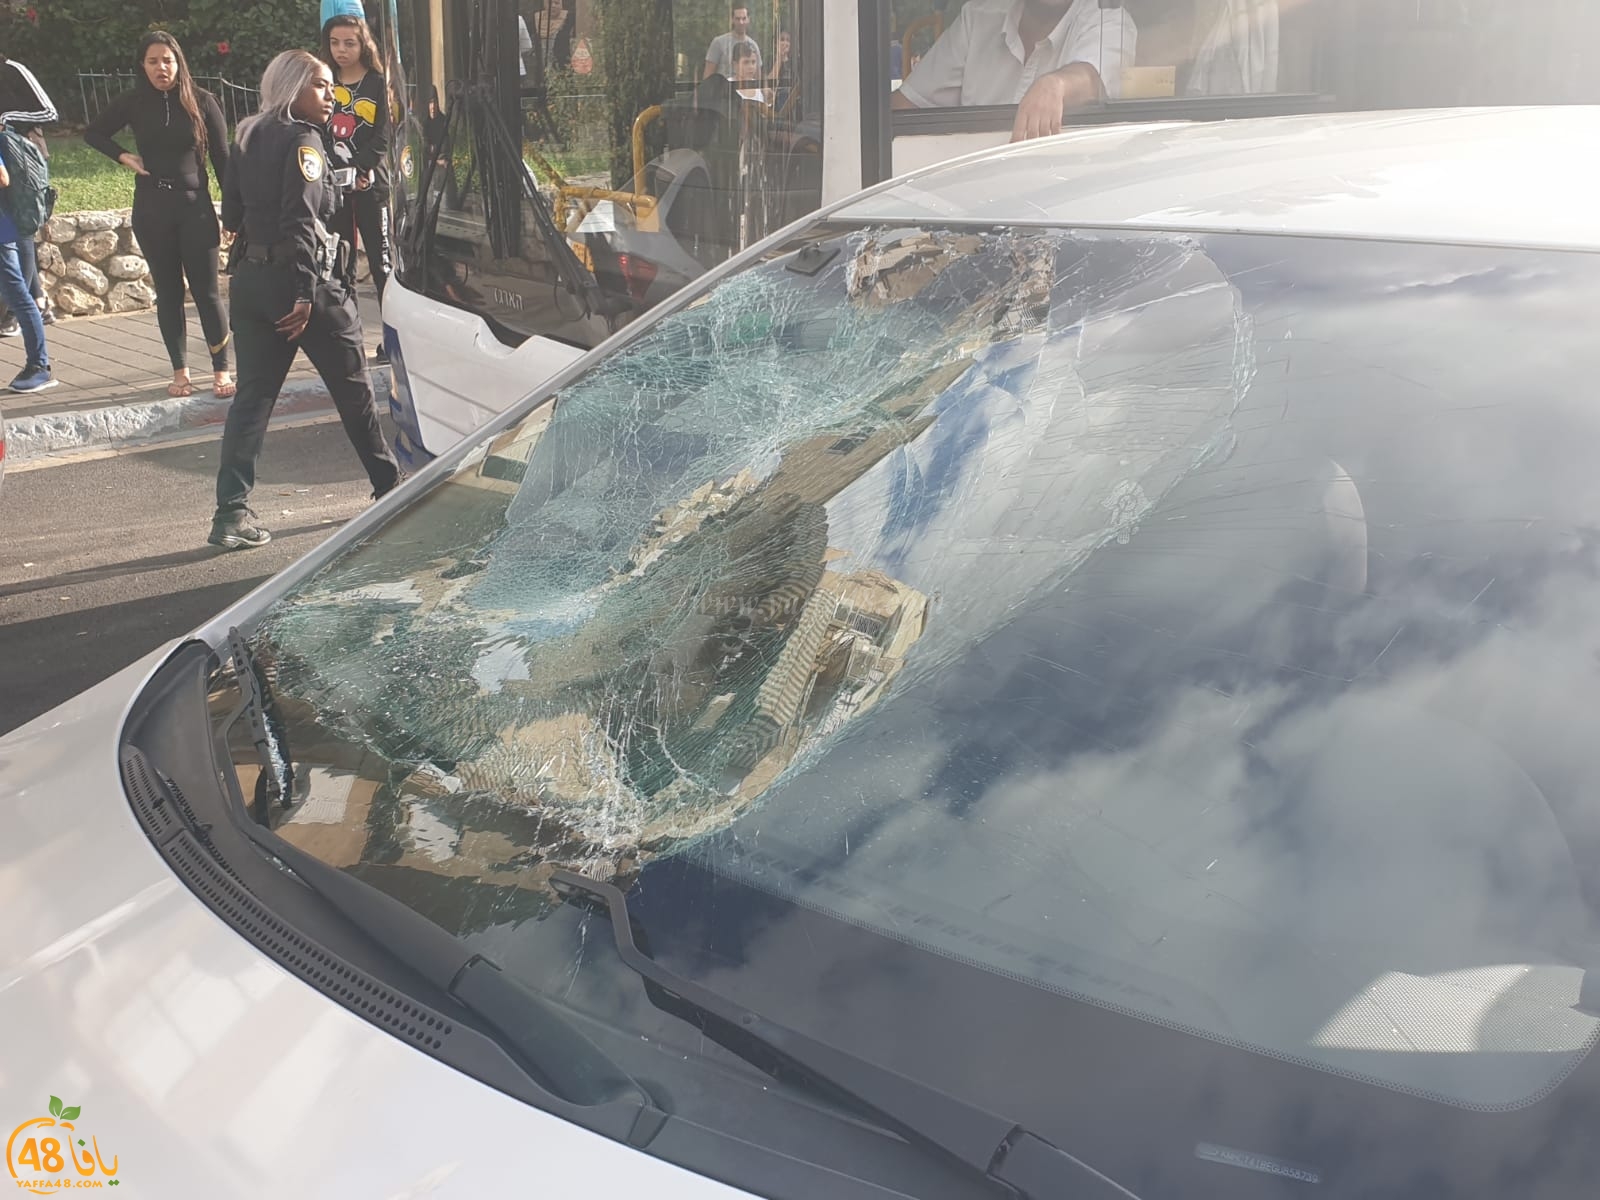  يافا: إصابة متوسطة لشاب 18 عاماً بحادث طرق وسط المدينة